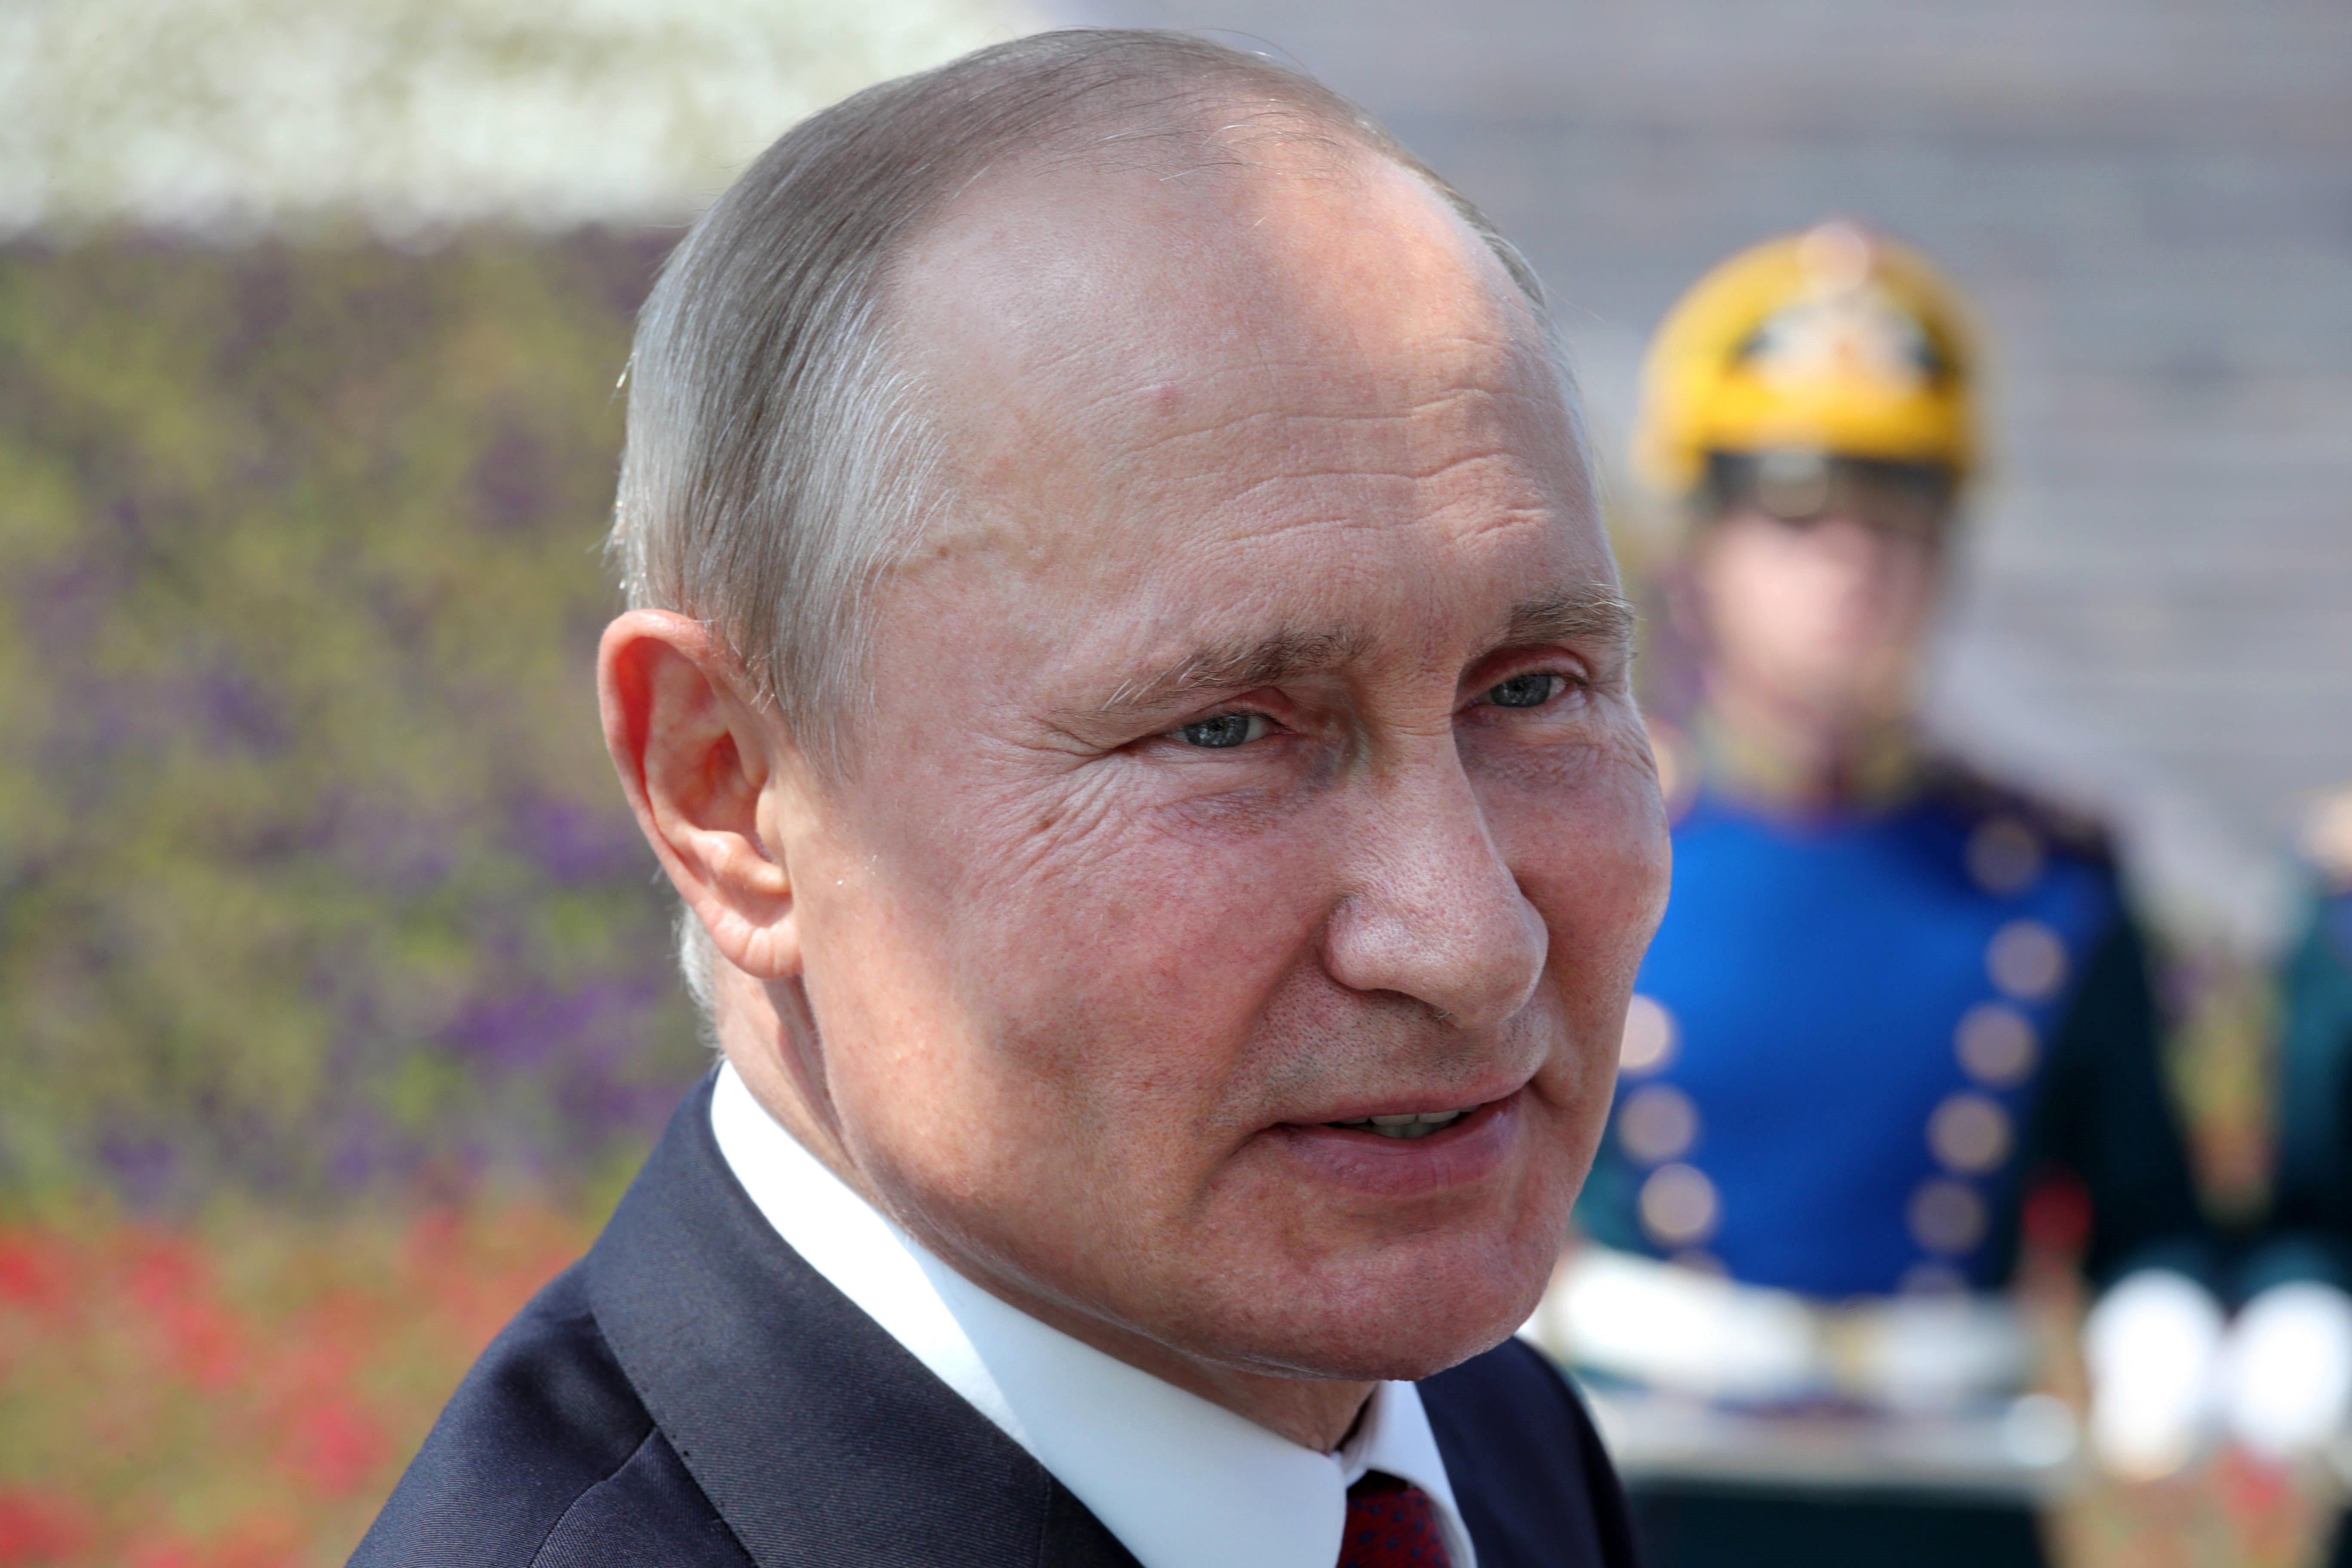 Vídeo | Qui es reuneixi amb Putin ha de passar per un túnel de desinfecció